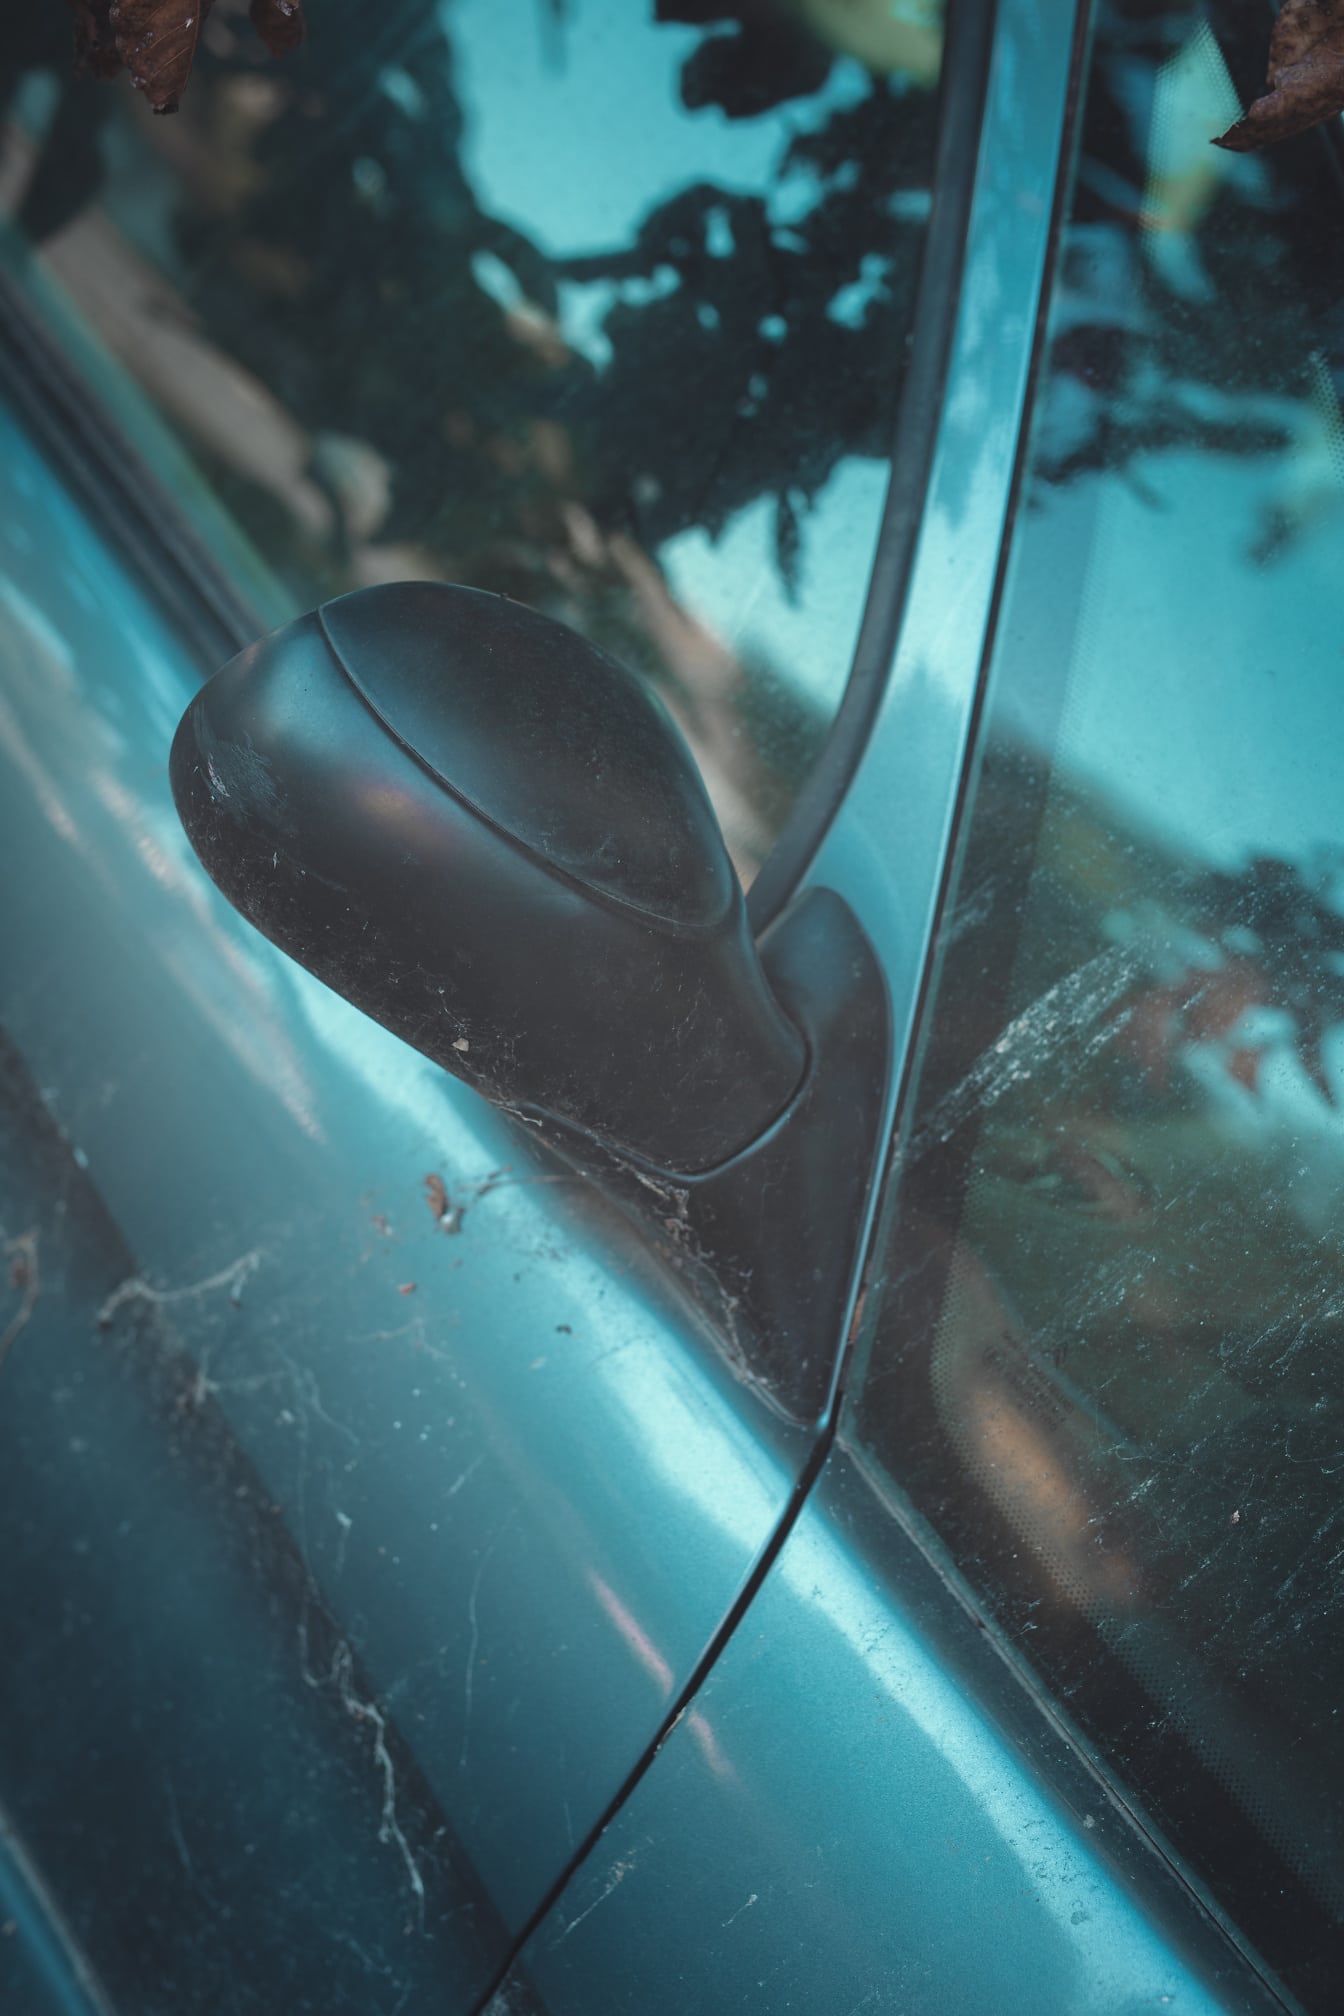 Dettaglio ravvicinato dello specchietto retrovisore dell’auto sporca